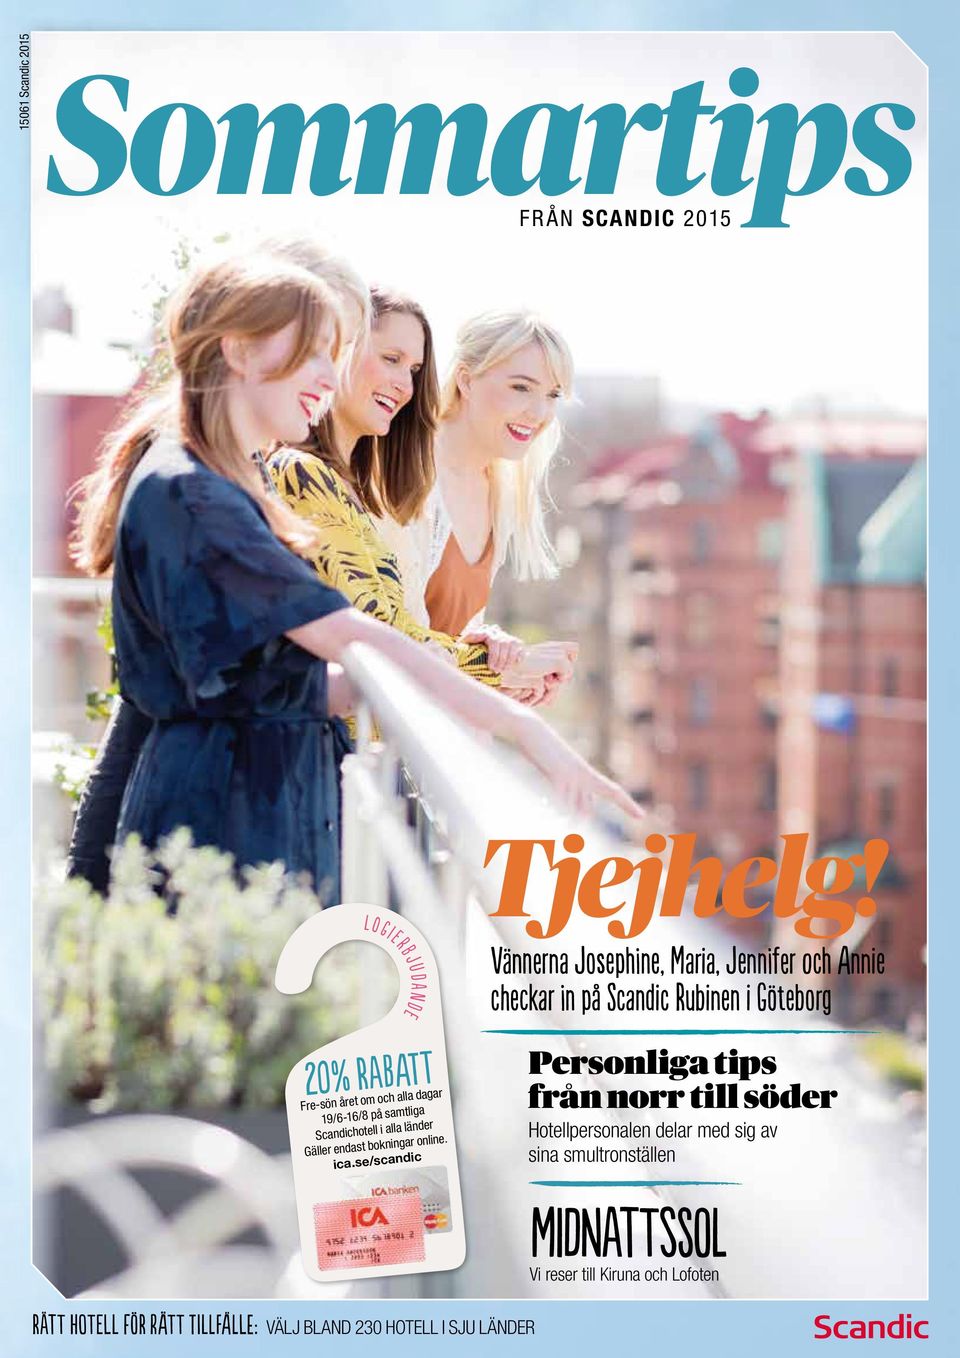 Vännerna Josephine, Maria, Jennifer och Annie checkar in på Rubinen i Göteborg Personliga tips från norr till söder